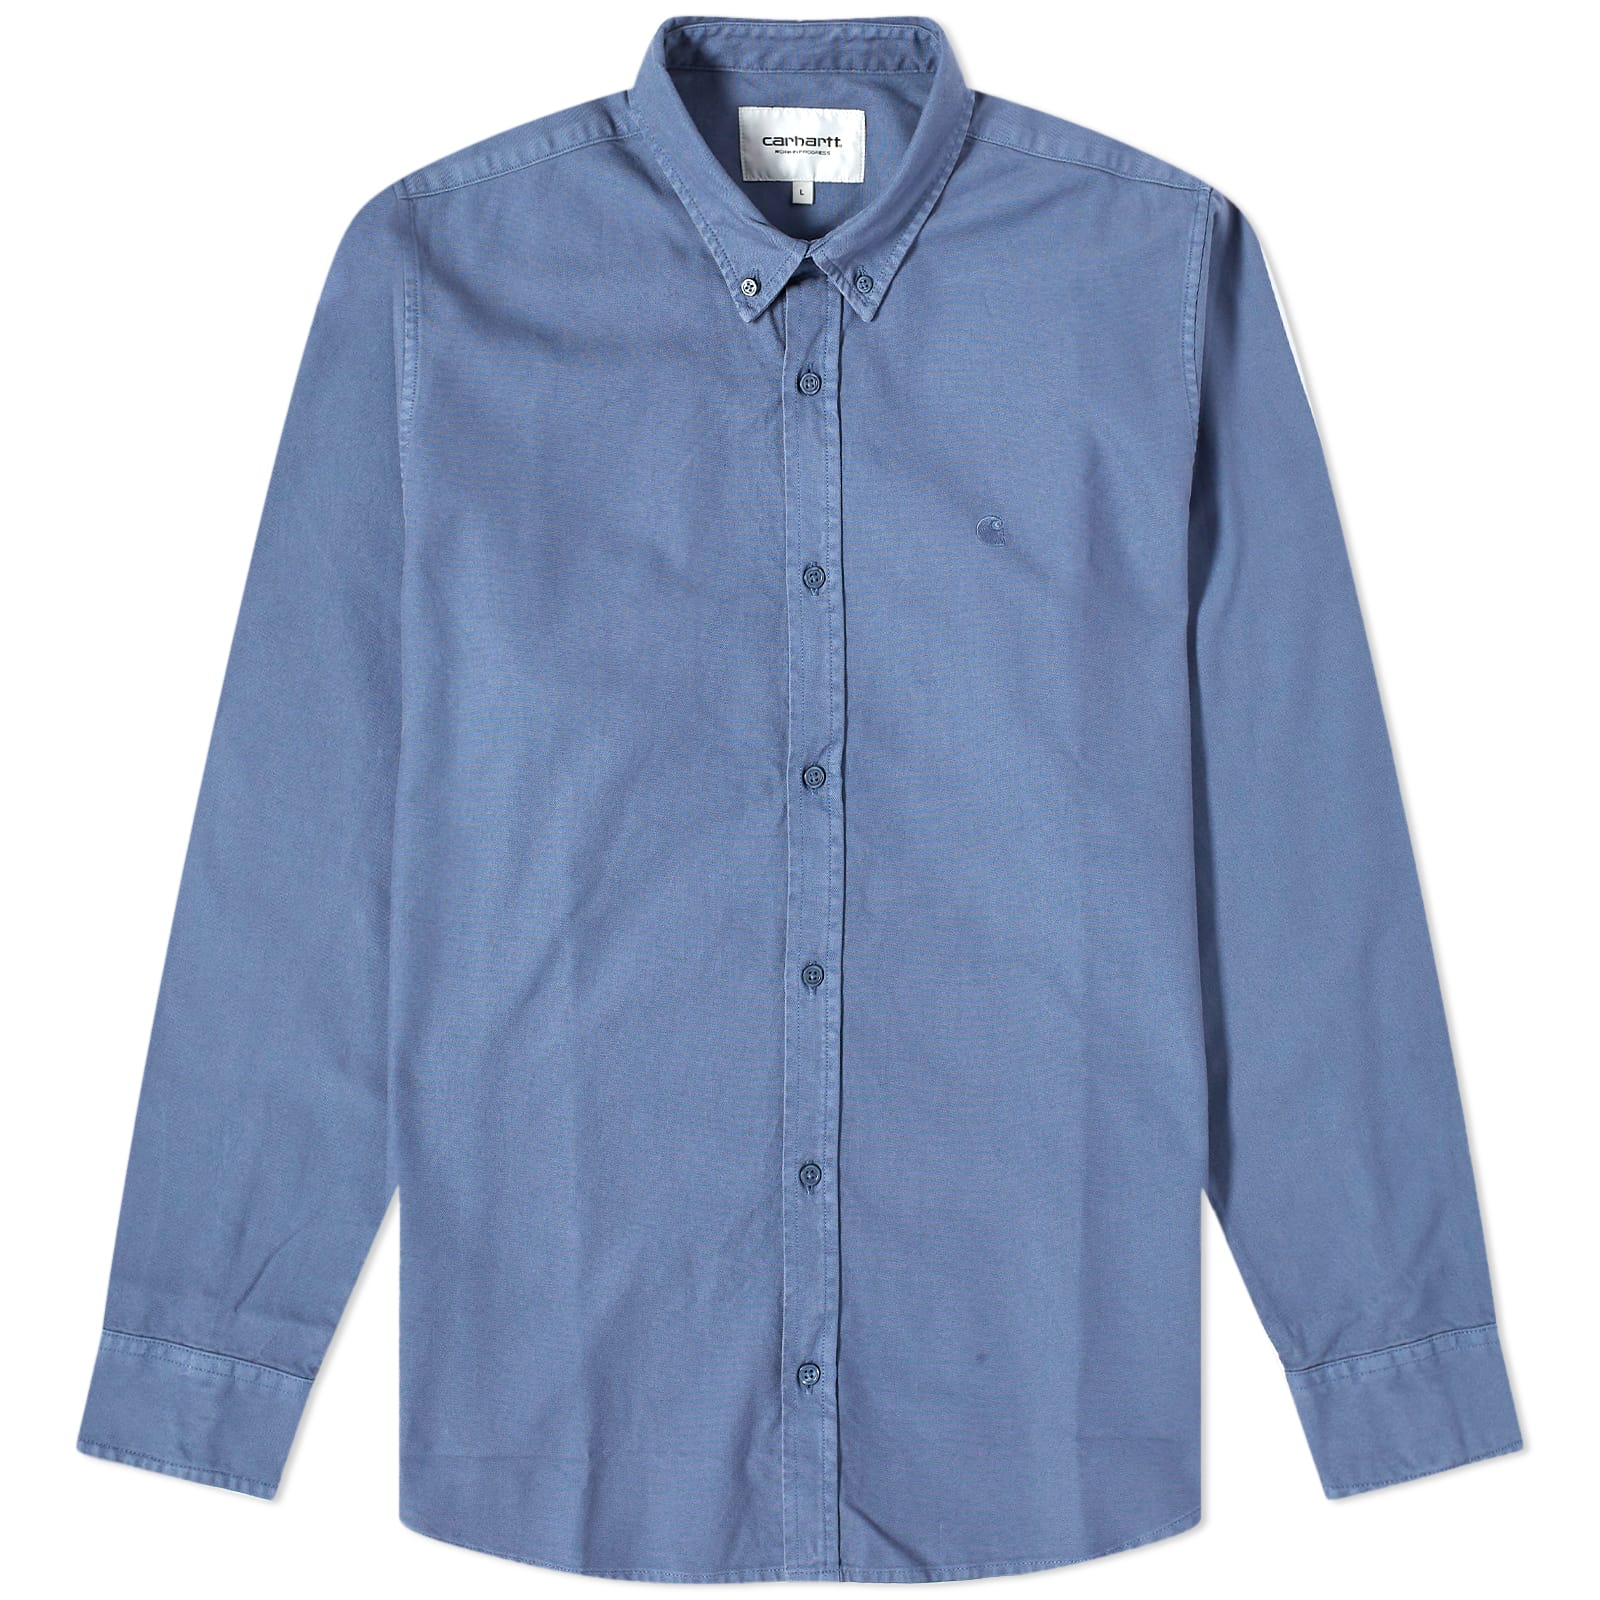 Рубашка Carhartt Wip Bolton, цвет Hudson Blue рубашка bolton carhartt wip цвет black garment dyed